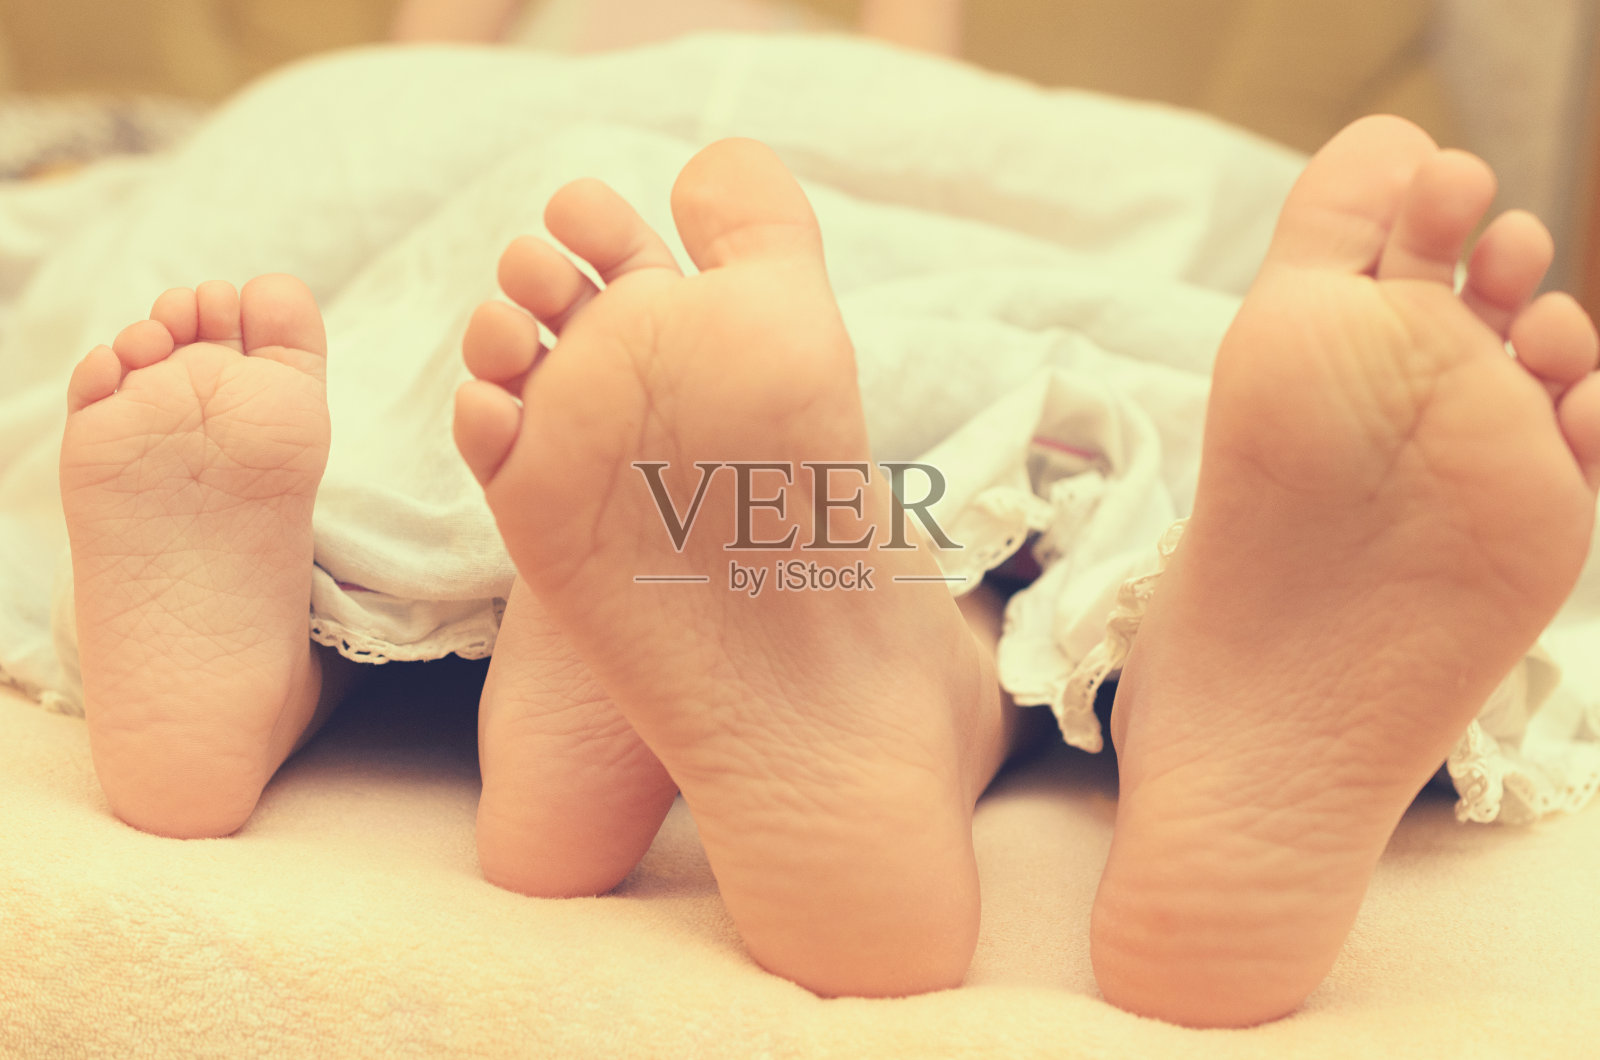 宝宝的脚从床上的毯子下面伸出来。照片摄影图片